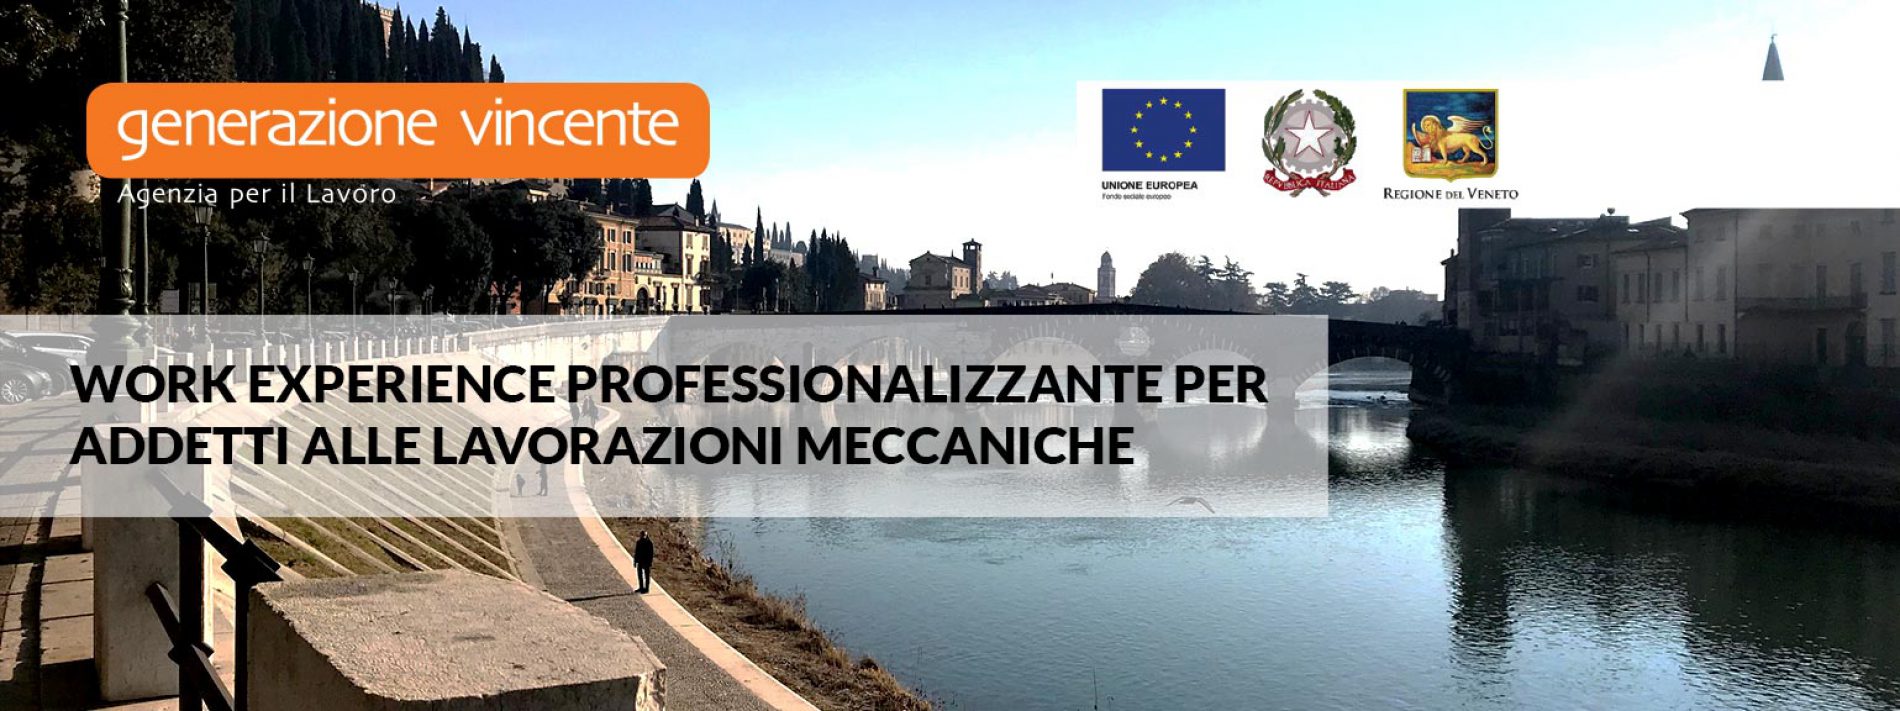 Work experience professionalizzante per addetti alle lavorazioni meccaniche [Pal Veneto]